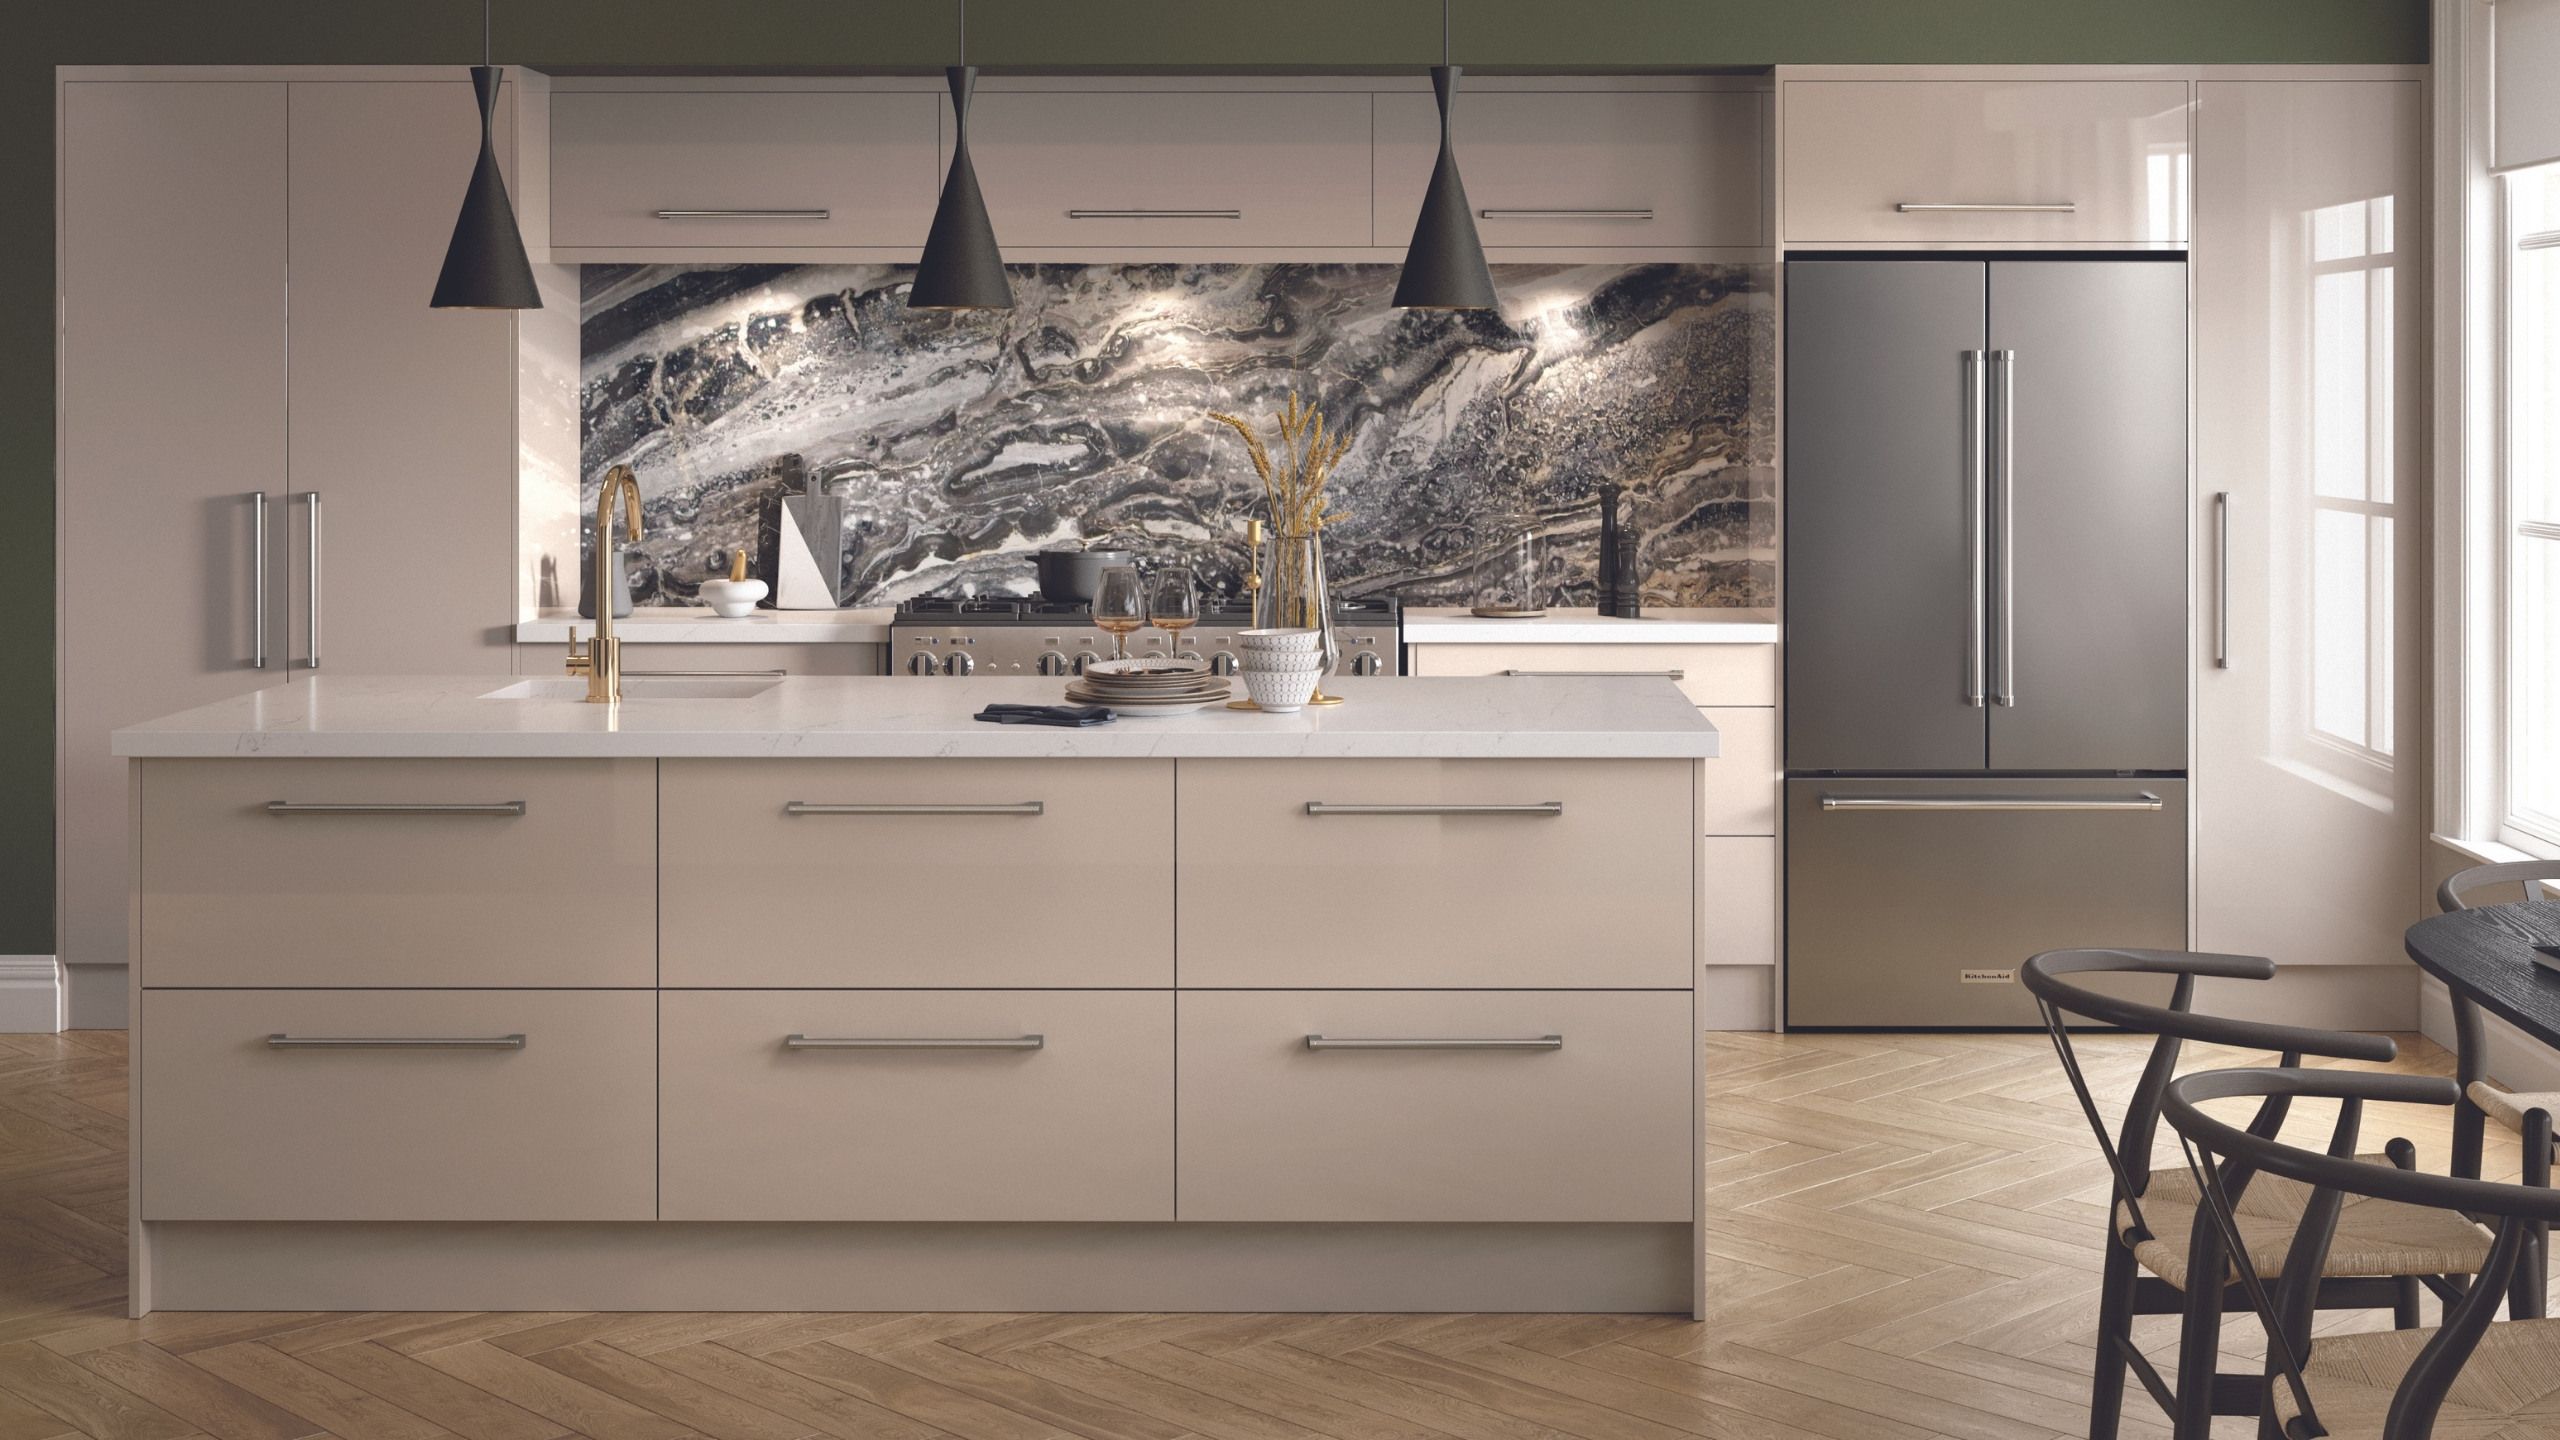 Zurfiz Contemporary Ultragloss Kitchen Design shown in Stone Grey